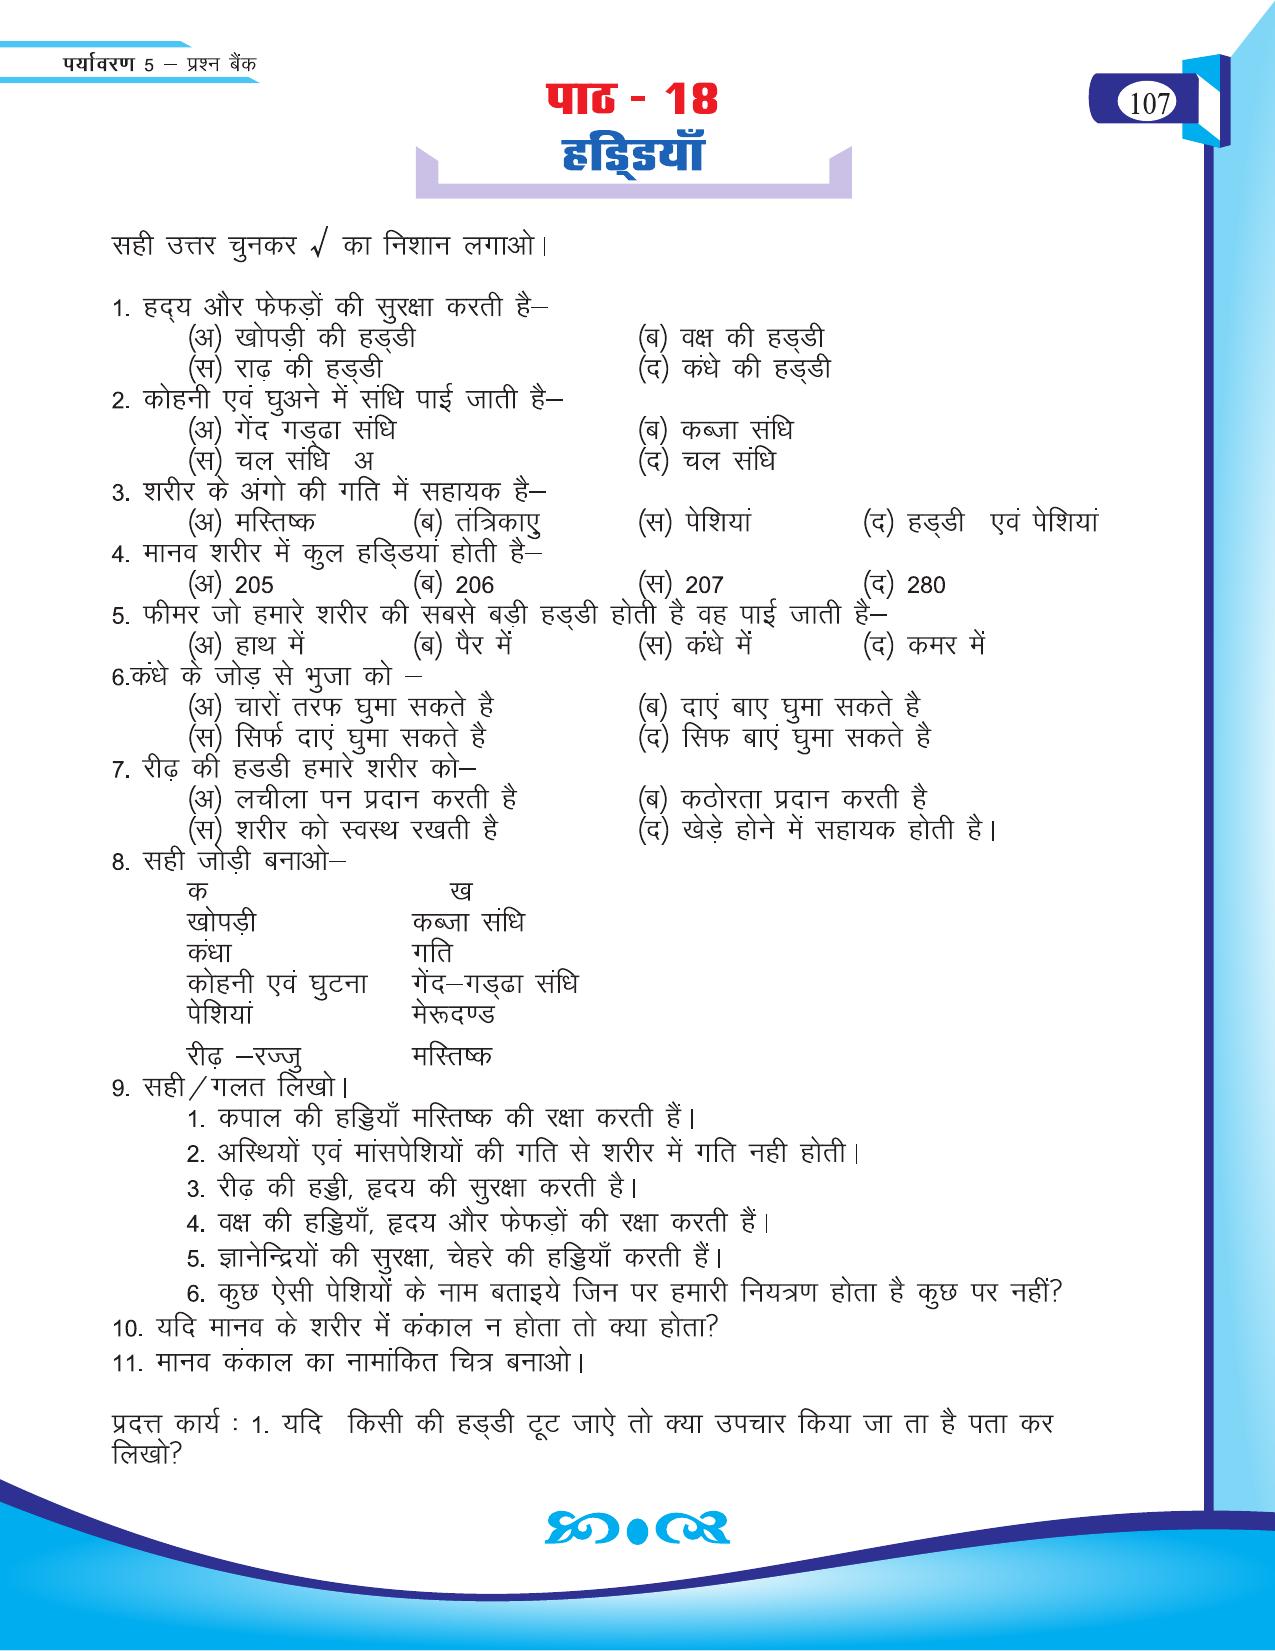 Chhattisgarh Board Class 5 EVS Question Bank 2015-16 - Page 33